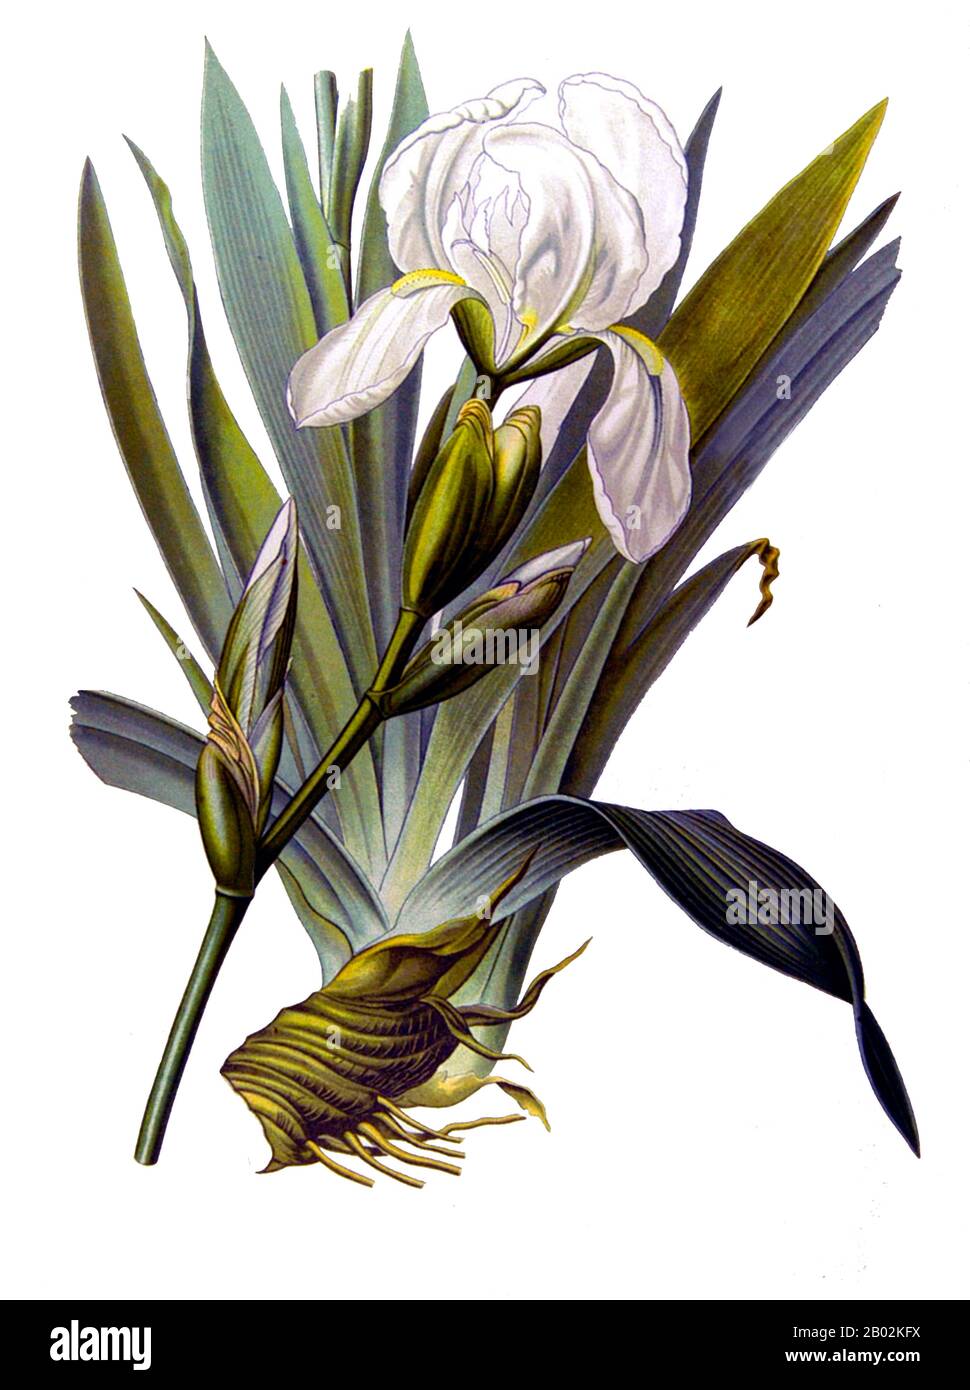 Iris germanica cultive jusqu'à 120 cm de haut et 30 cm de large. Les racines peuvent atteindre 10 cm de profondeur. C'est une vivace rhizomateuse qui fleurit d'avril à juin. Il est préférable de soulever, diviser et replanter les rhizomes une fois que la floraison est terminée car c'est lorsque la plante pousse les nouvelles pousses qui fleuriront l'année suivante. Des centaines d'hybrides représentent toutes les couleurs, du noir de jet aux blancs pétillants. La seule couleur vraiment manquante est le scarilet brillant. Banque D'Images